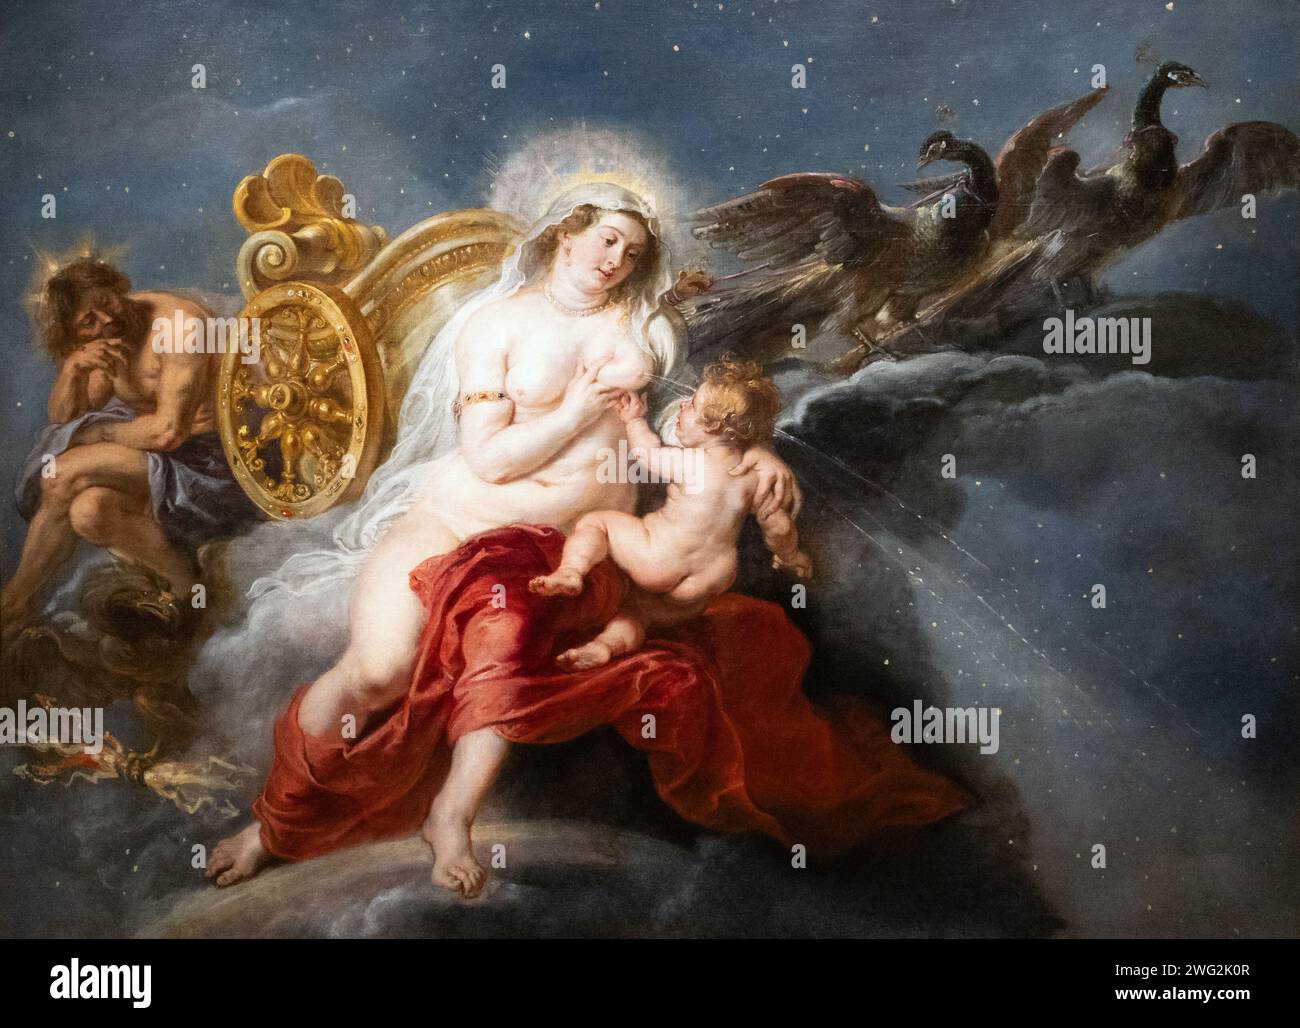 Peinture de Rubens ; 'la naissance de la voie lactée', 1636-8, huile sur toile. Jupiter Dieu, déesse Junon et le bébé Hercule. peintures mythologiques des années 1600. Banque D'Images